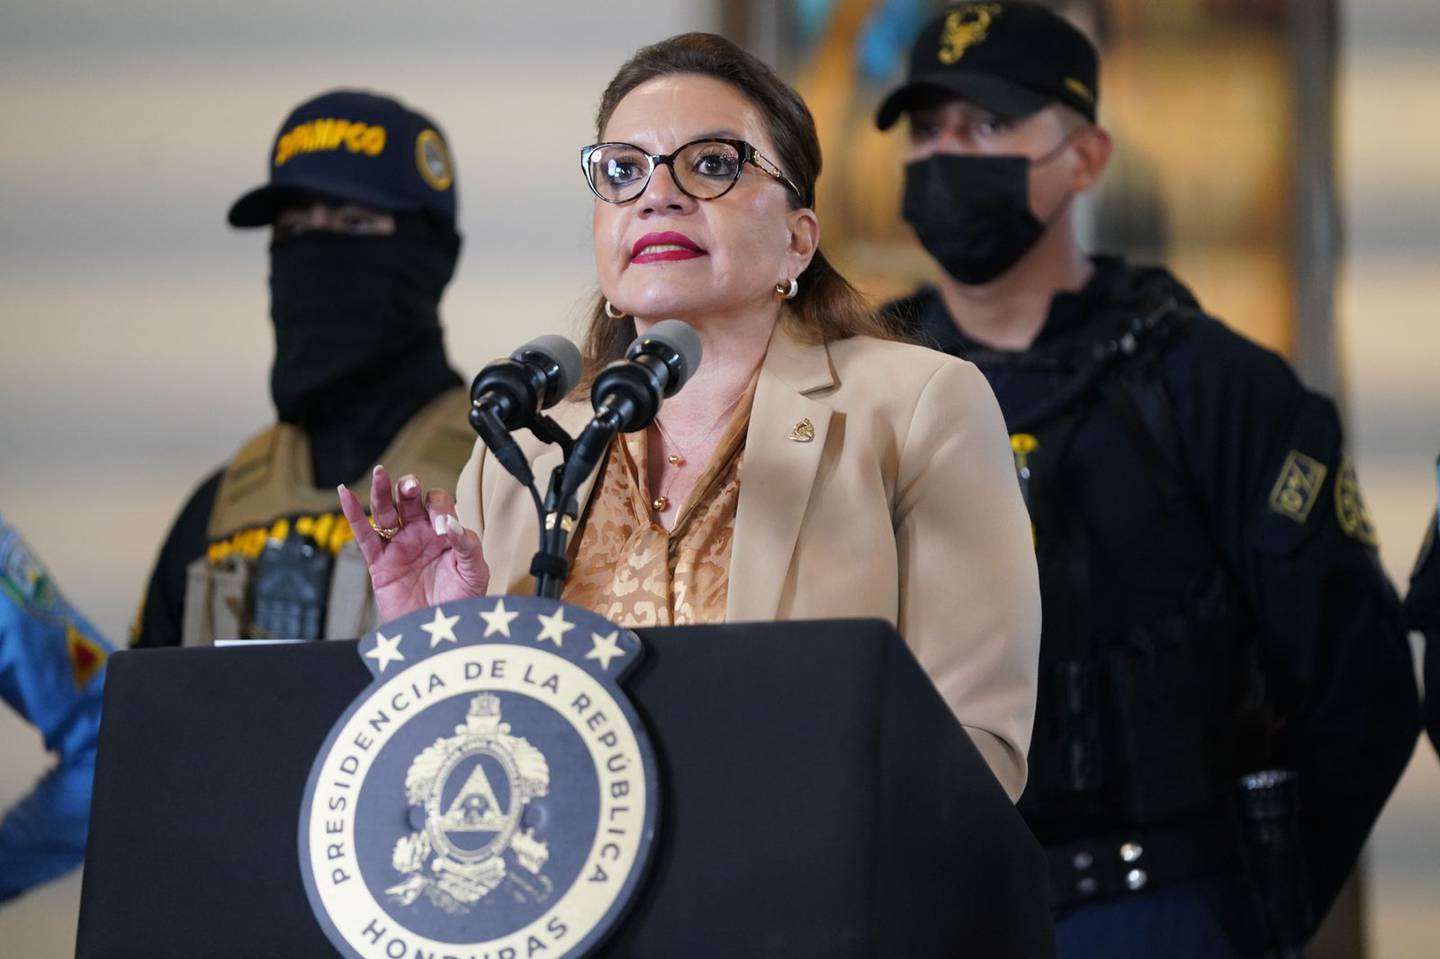 La presidenta Xiomara Castro al anunciar el plan de seguridad nacional con el que el país centroamericano le "declara la guerra" a los grupos criminales que practican la extorsión, la corrupción y el narcotráfico.